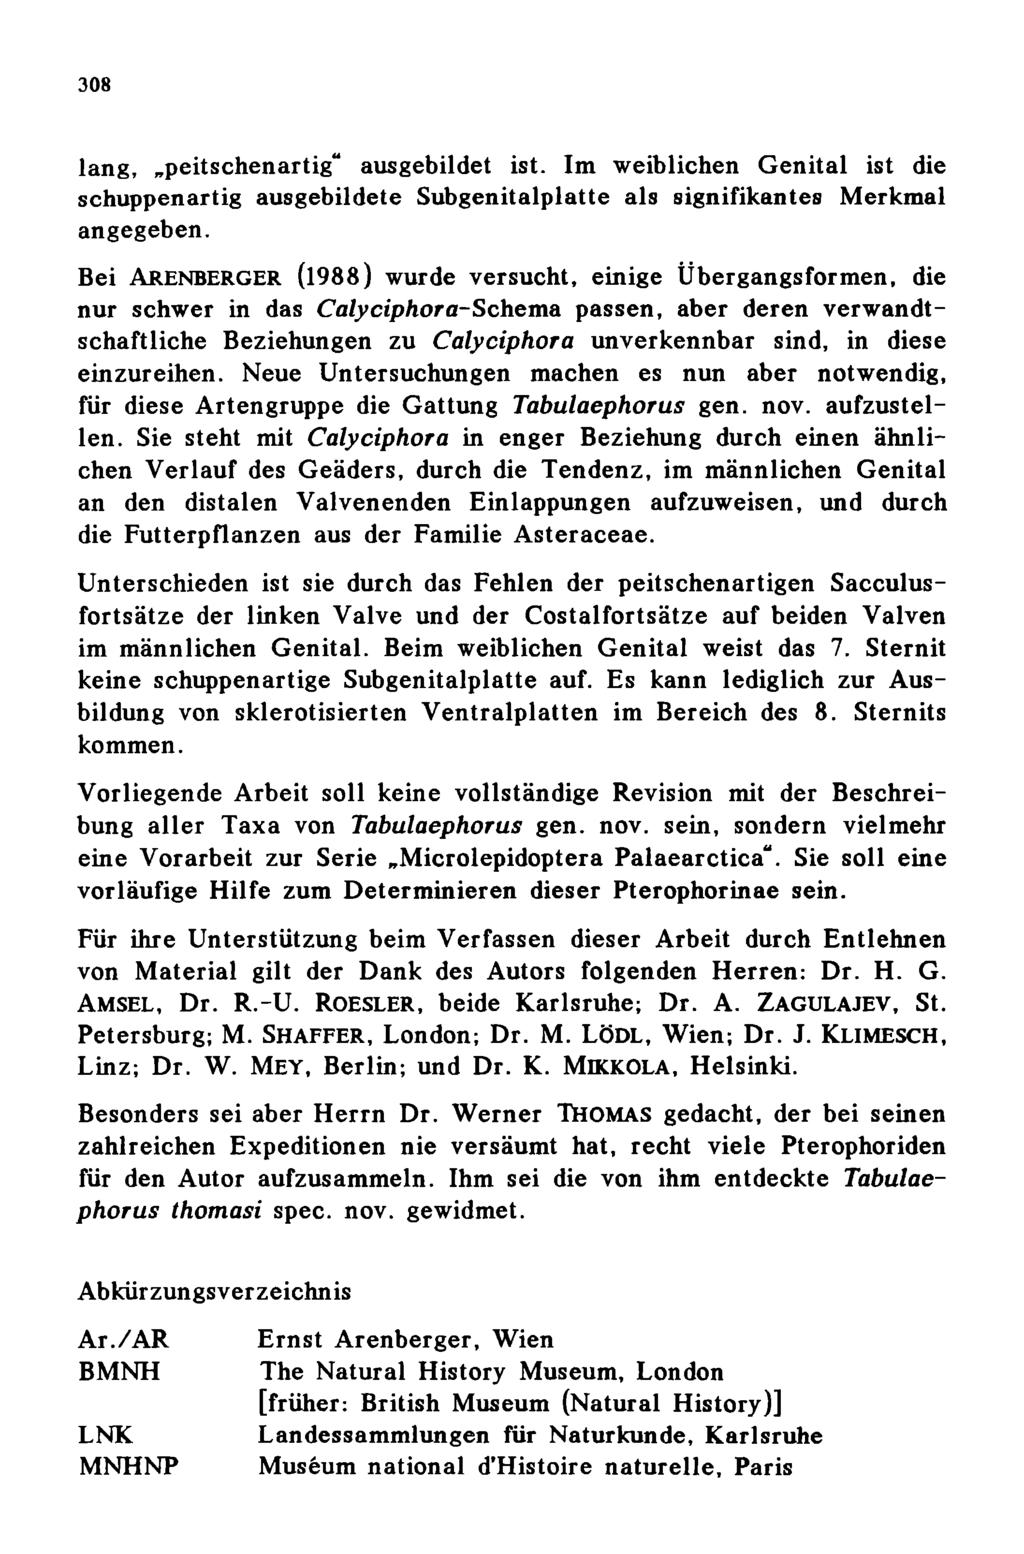 308 Entomologischer Verein Apollo e.v. Frankfurt am Main; download unter www.zobodat.at lang, peitschenartig ausgebildet ist.